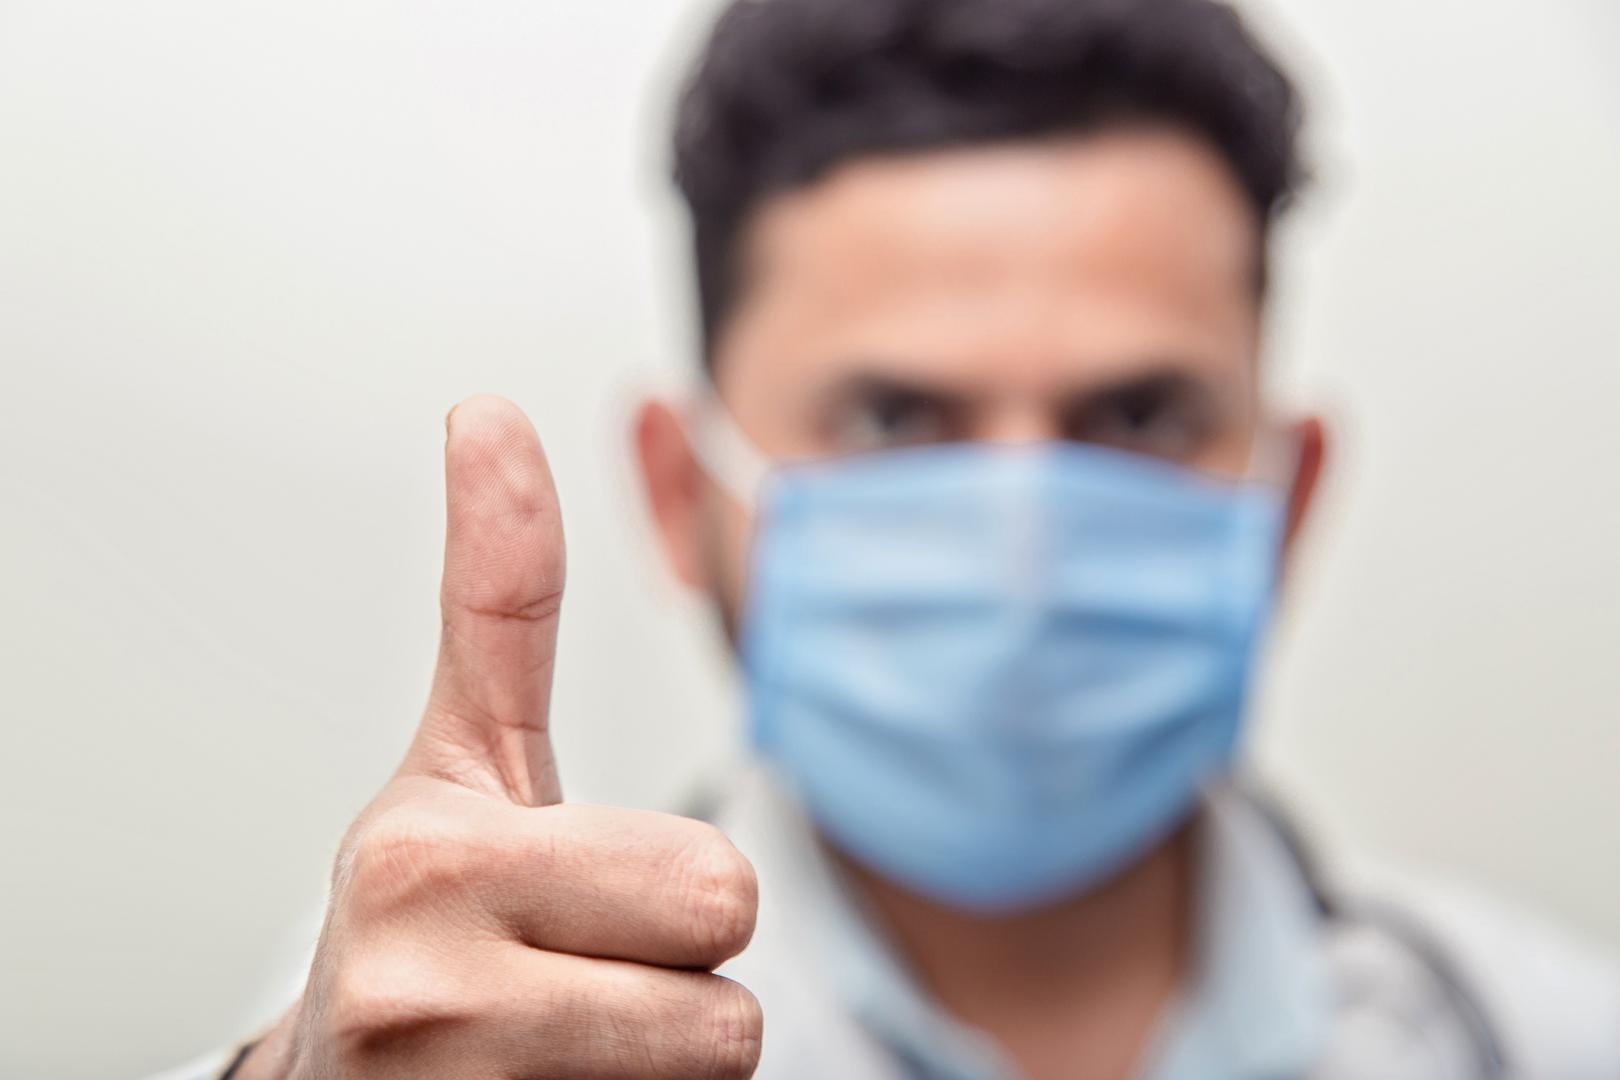  6 maszkot húzva bizonyította egy orvos: nem fogy el a levegő a maszk alatt